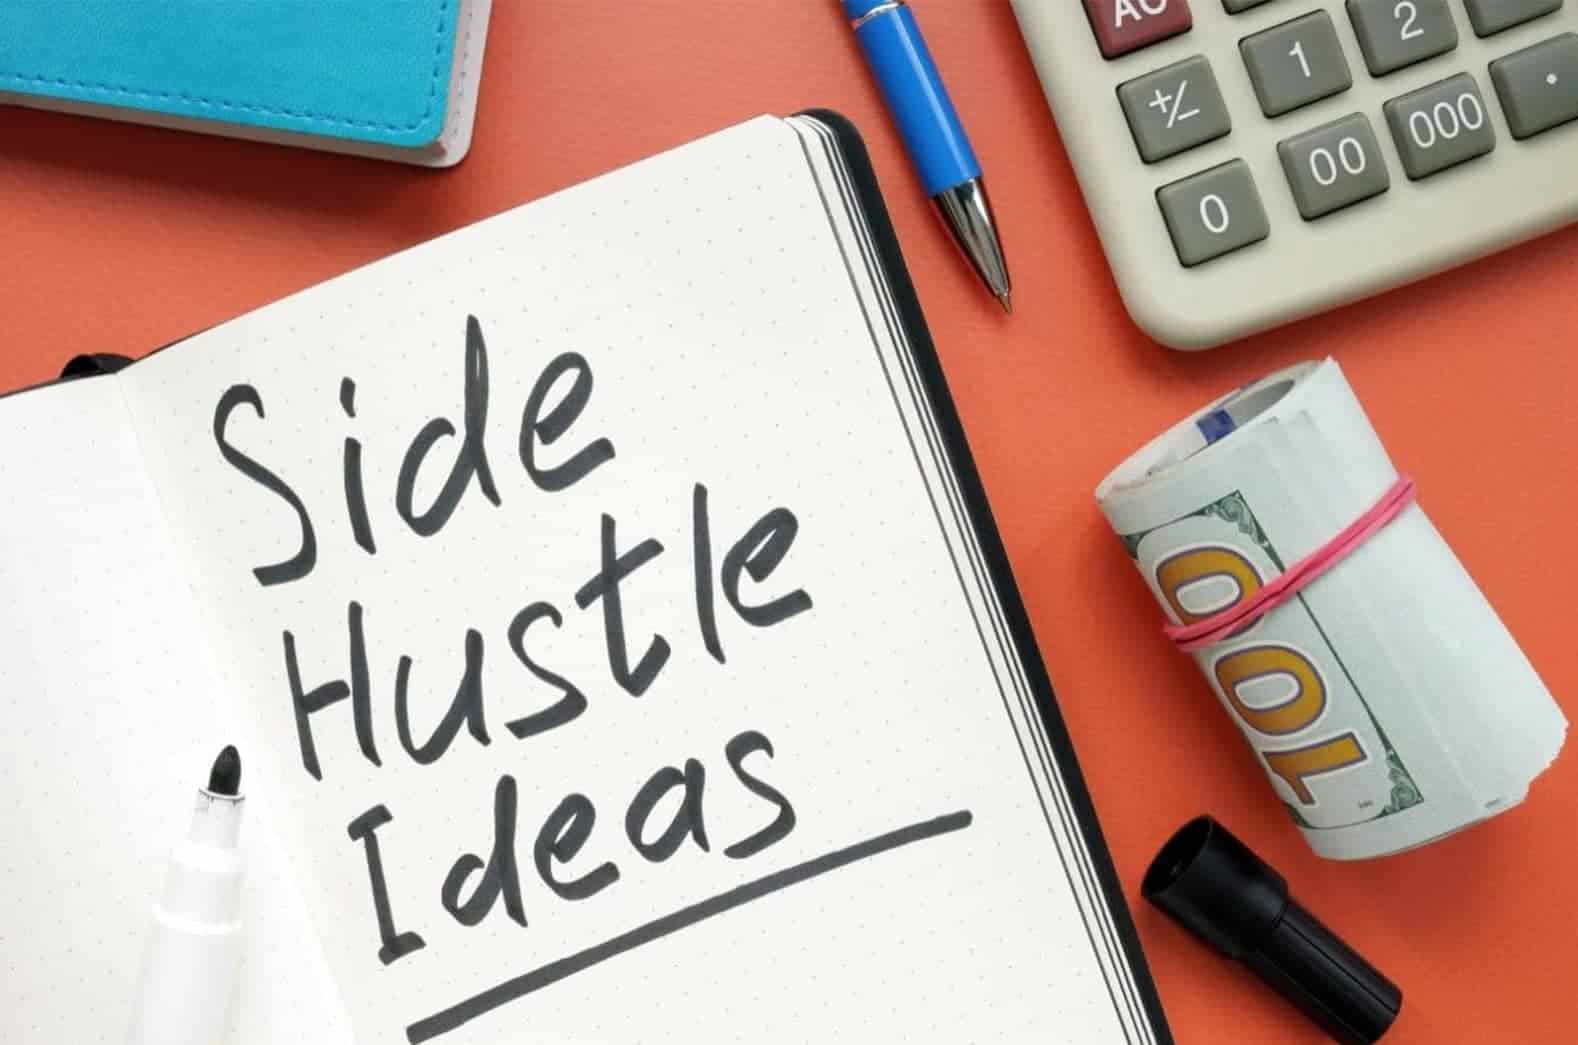 Best side hustle ideas, notepad, pen, calculator